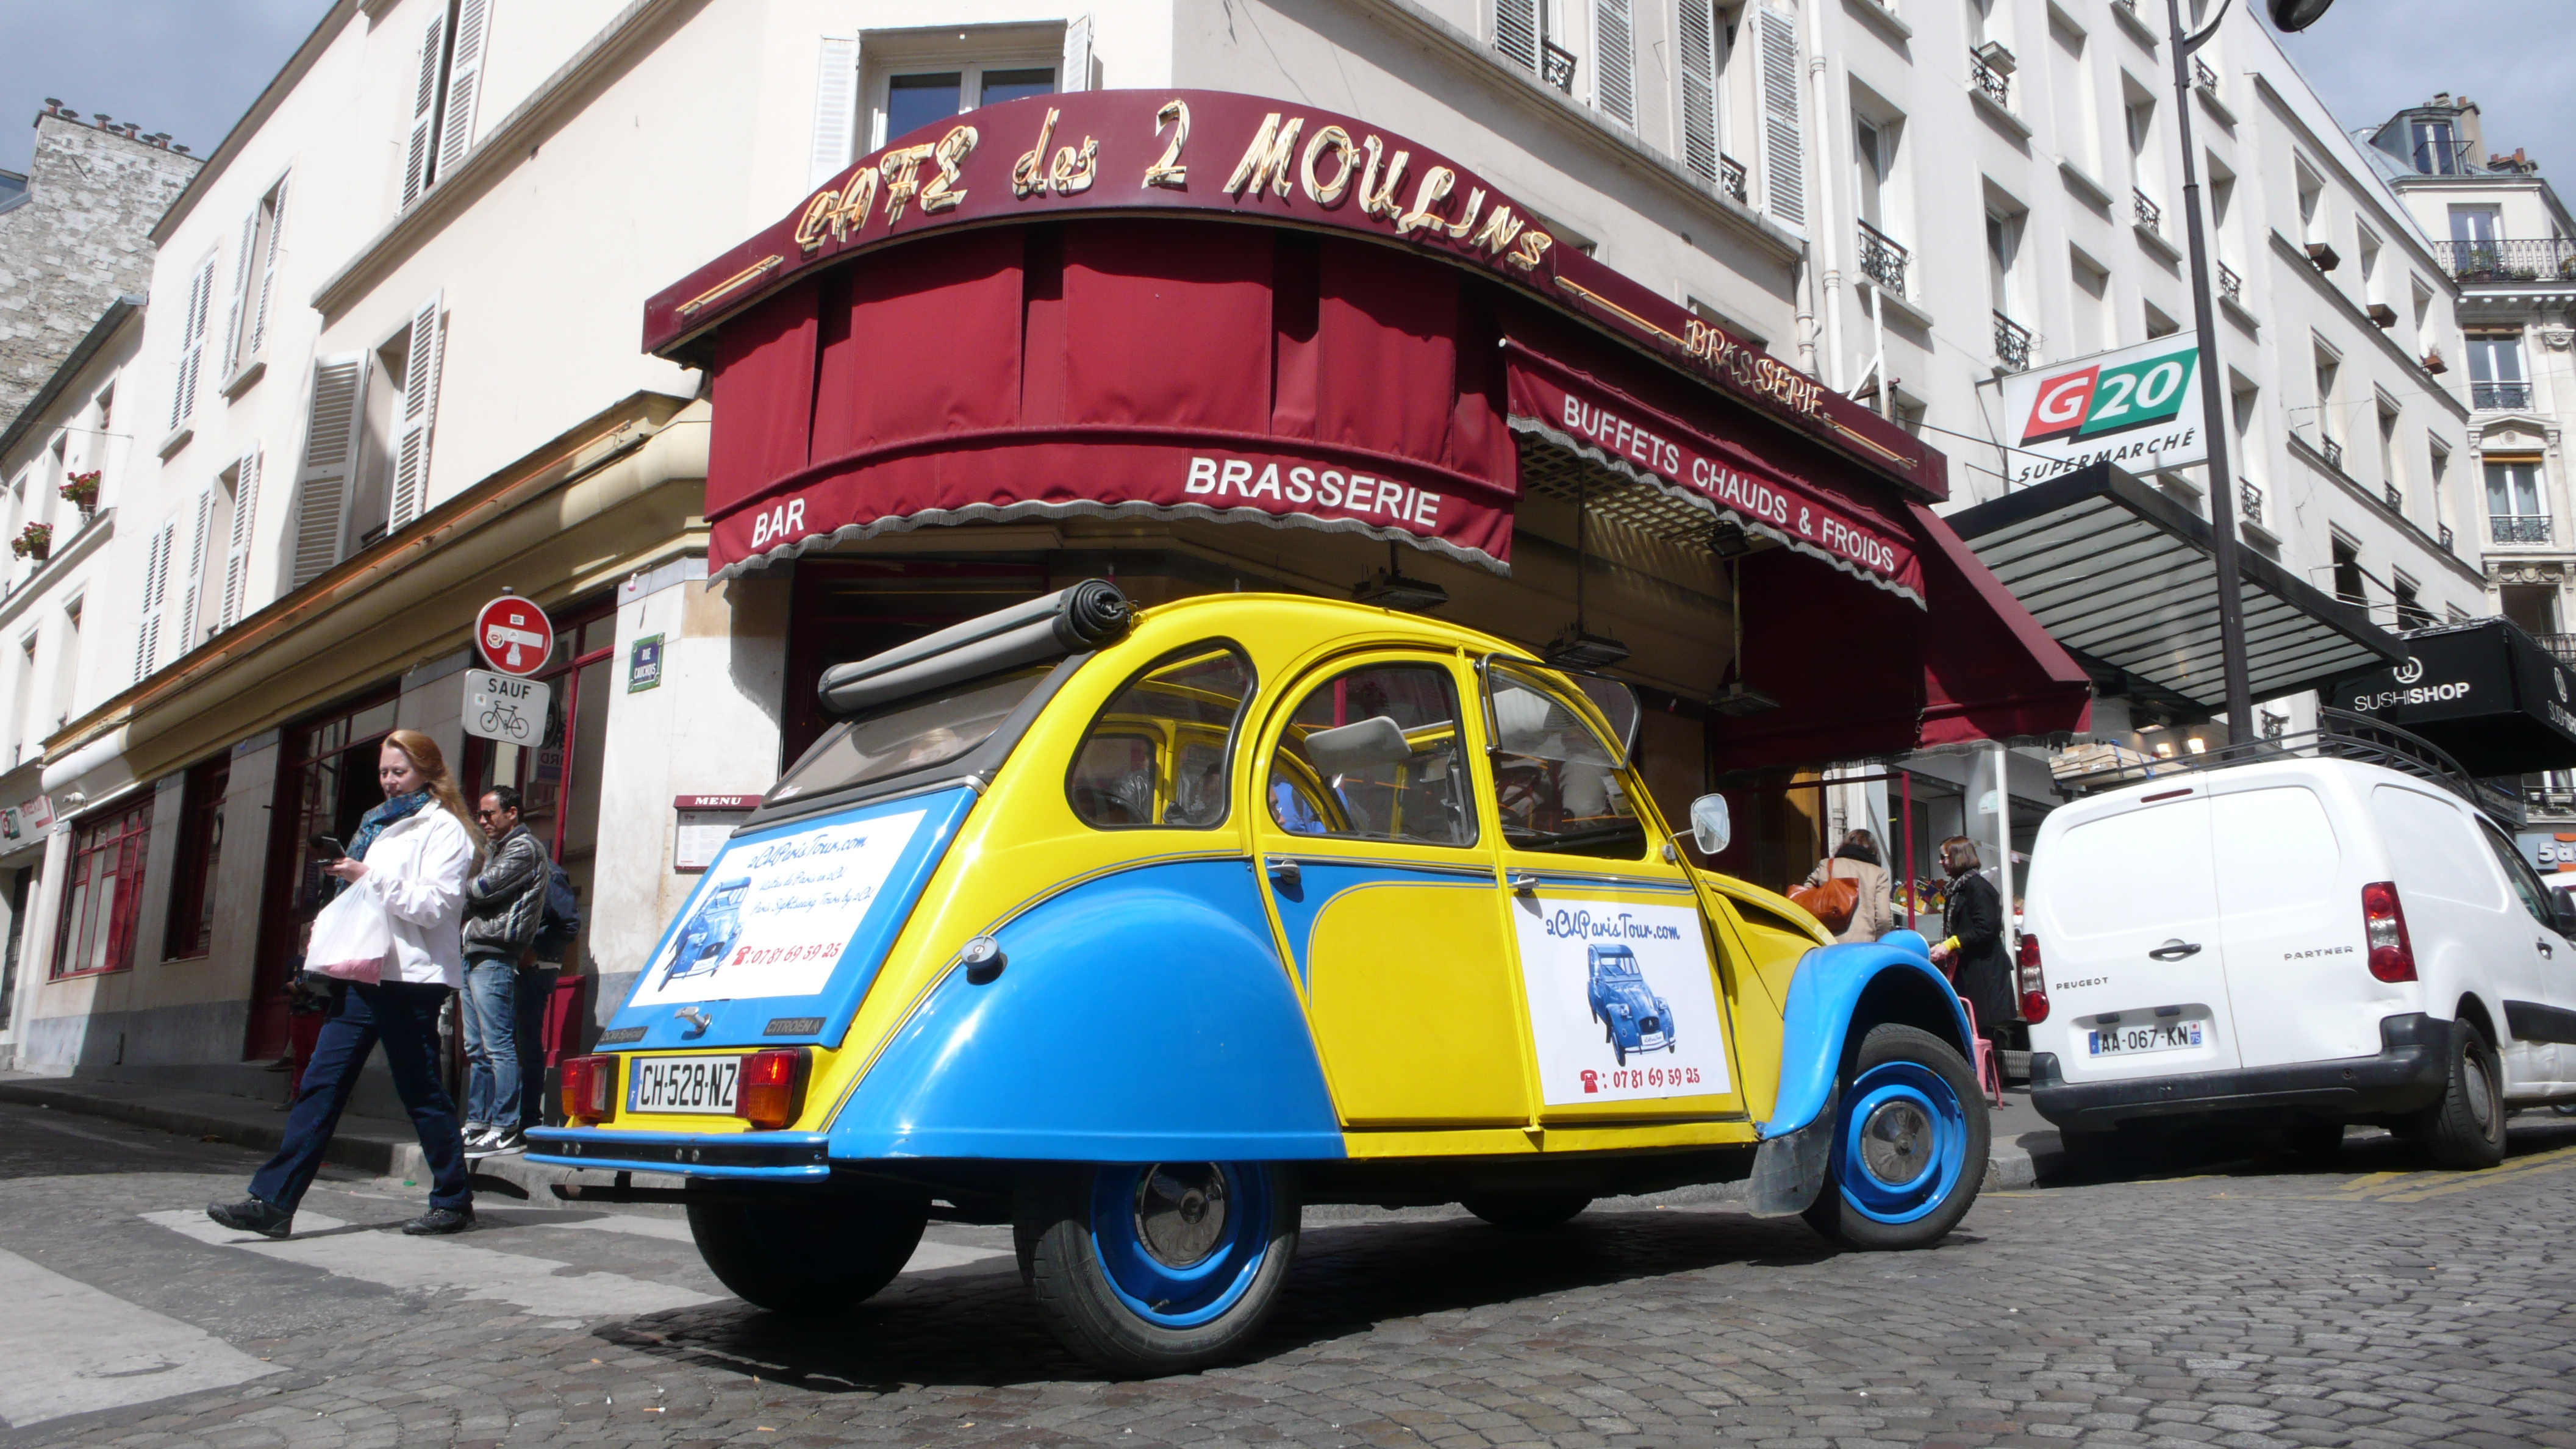 2CV Paris Tour - Visit Paris by 2CV! The Café des Deux Moulins